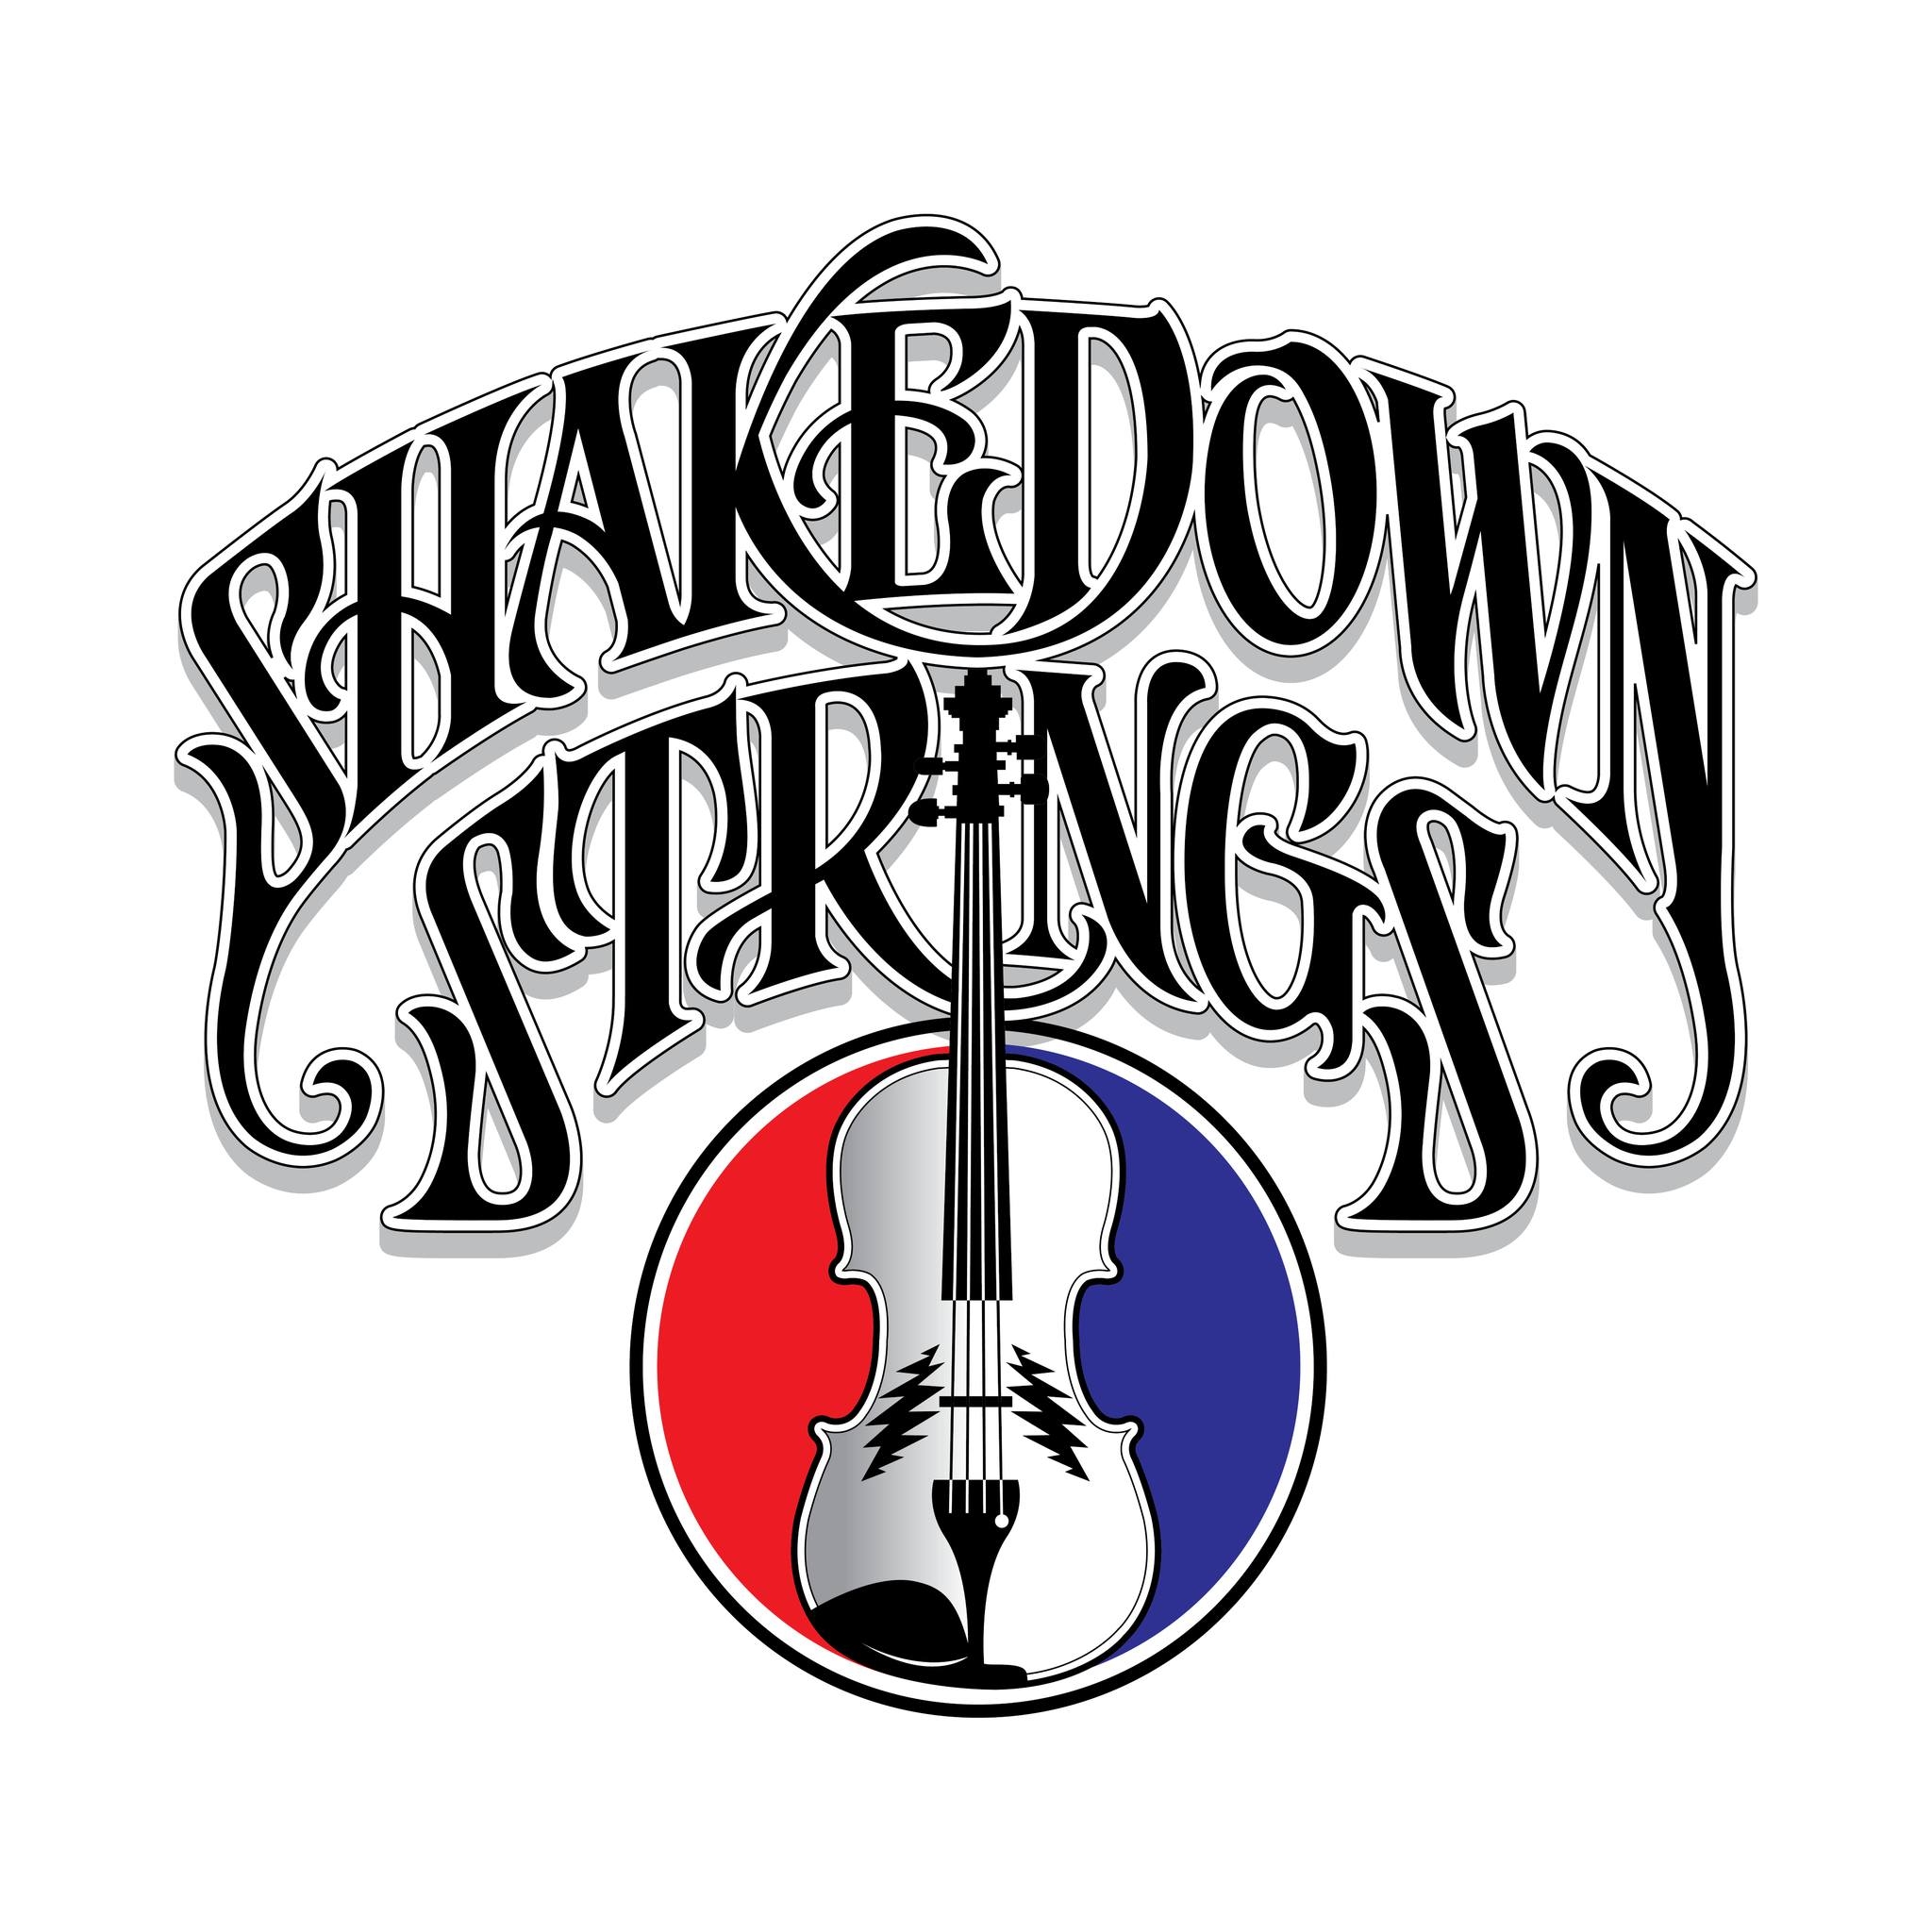 Shakedown Strings to Perform at Shakedown Vegas in Las Vegas